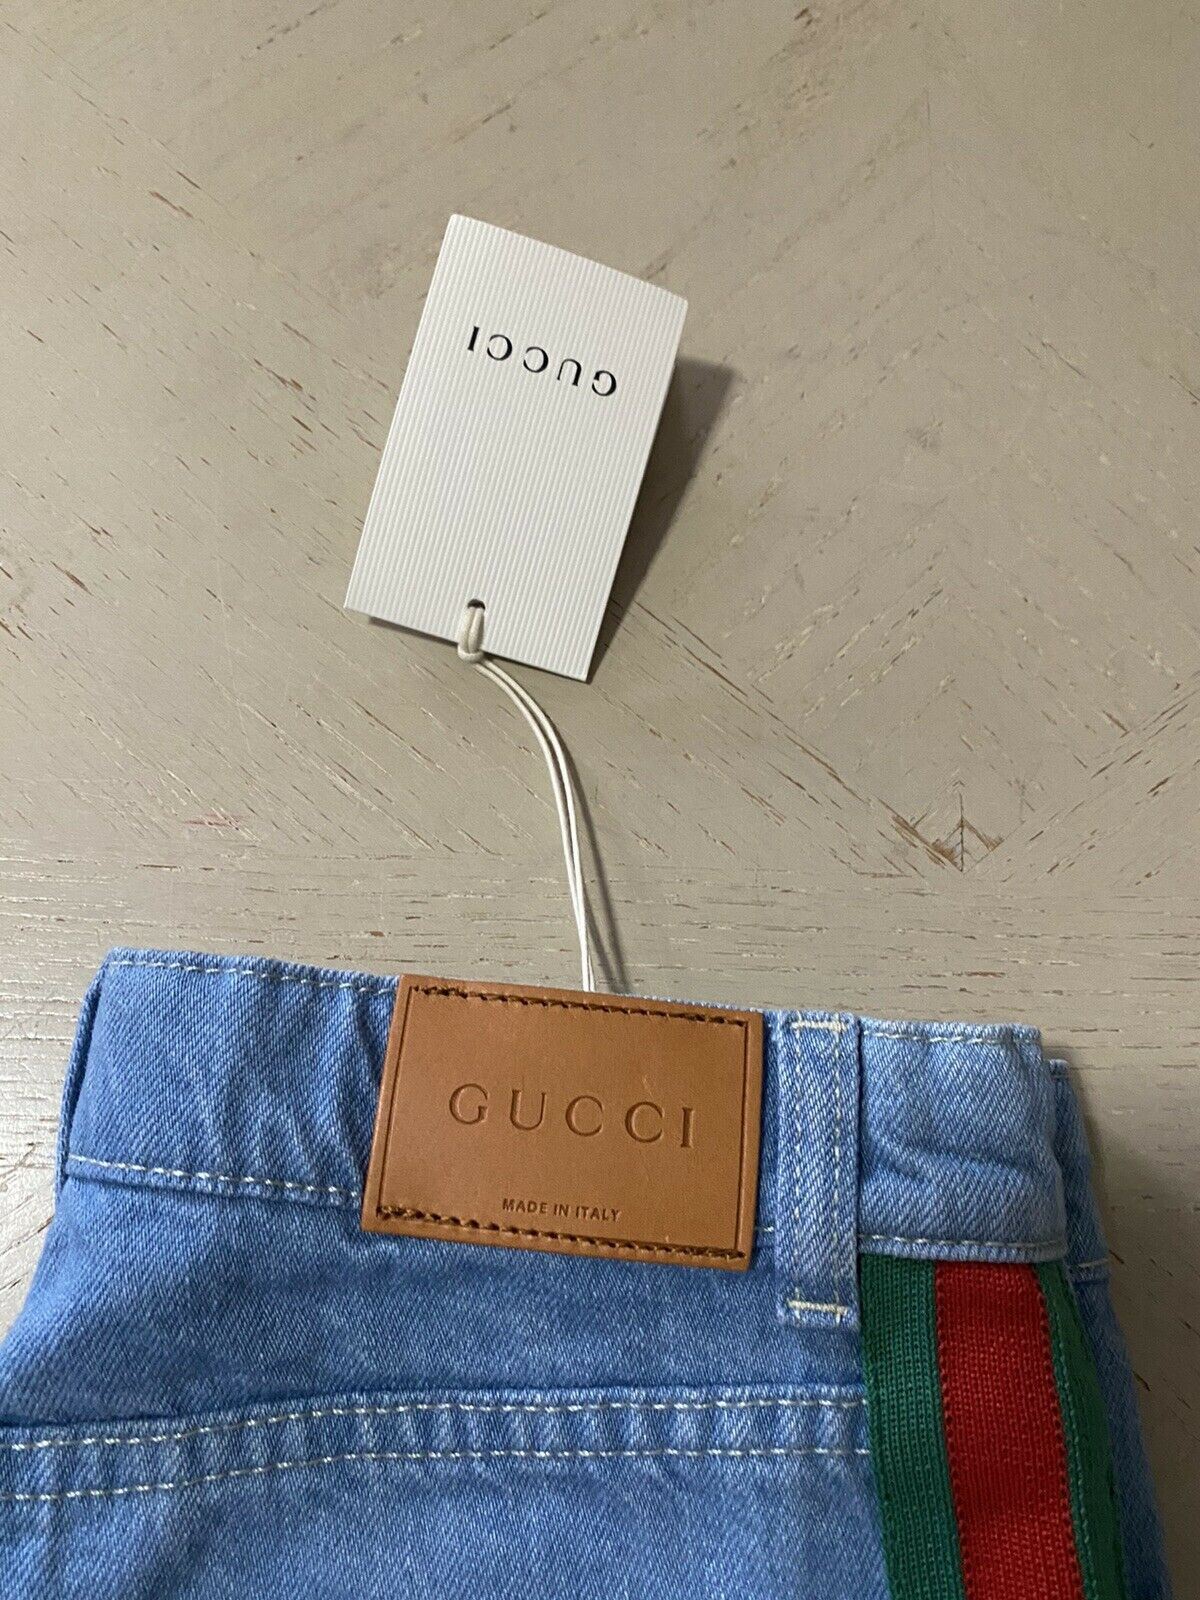 Джинсы NWT Gucci для мальчиков LT синие, размер 5, Италия